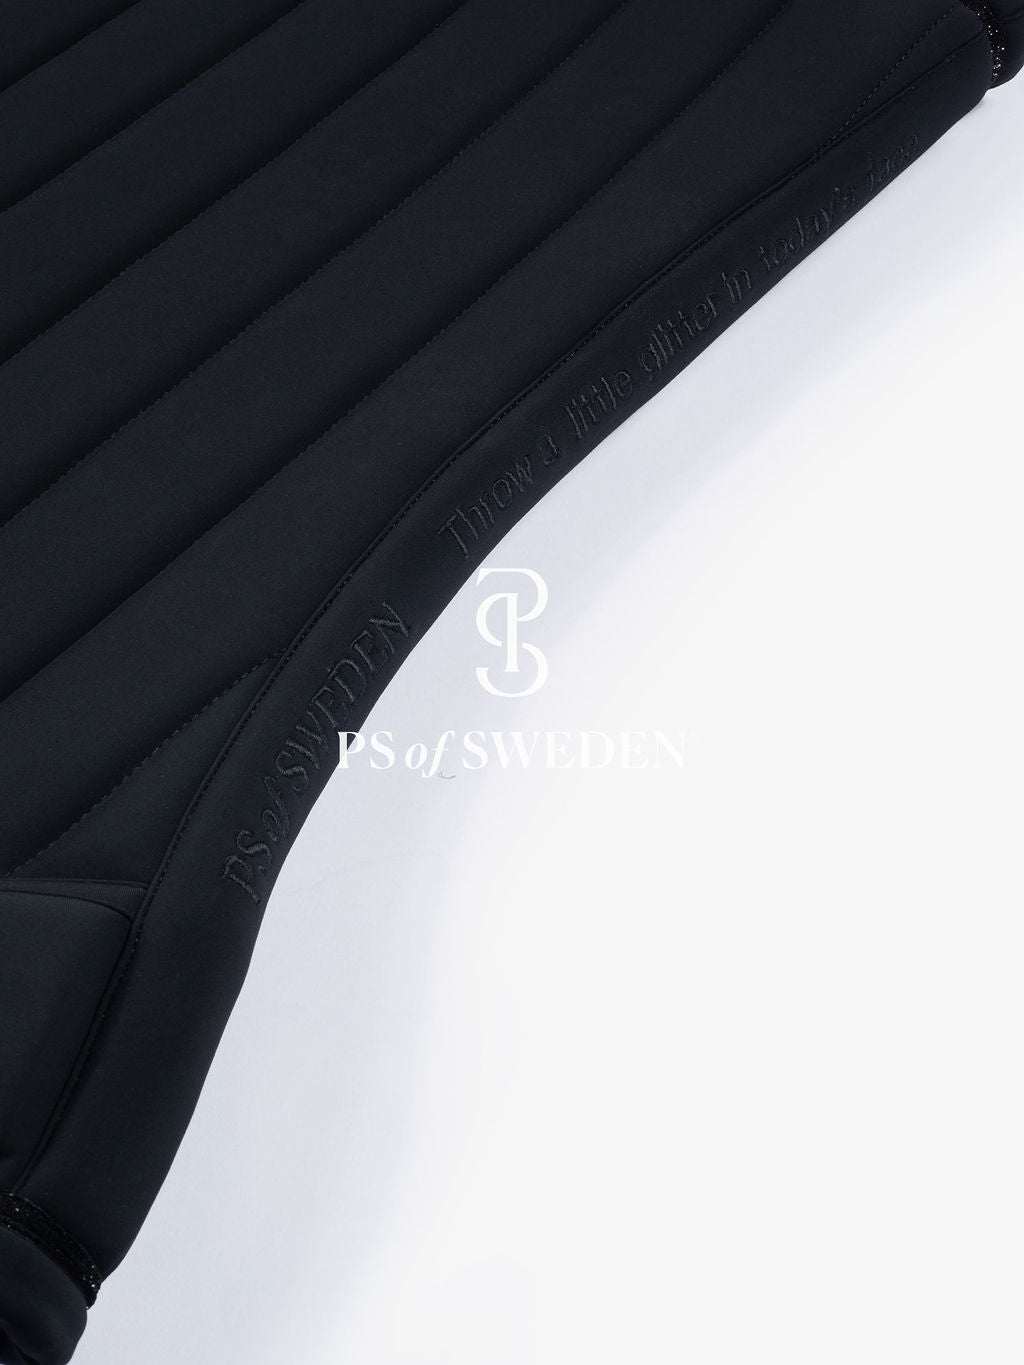 PS of Sweden -  Limited Edition Stripe Dressage Saddlepad - Black